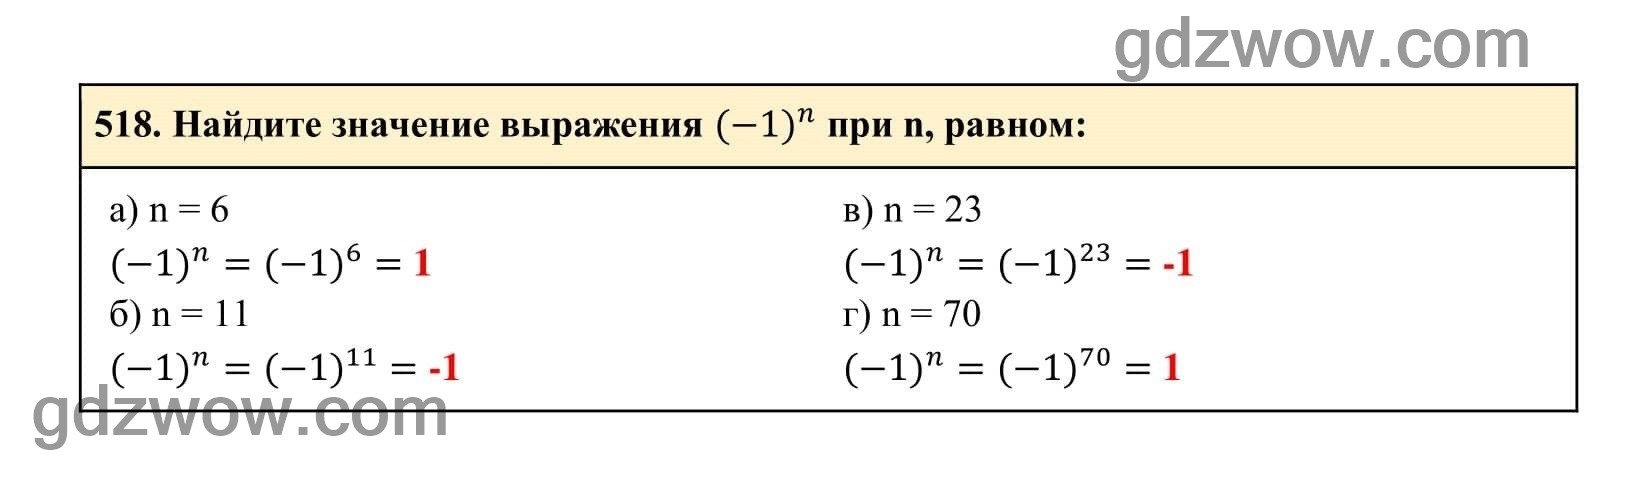 Упражнение 518 - ГДЗ по Алгебре 7 класс Учебник Макарычев (решебник) - GDZwow